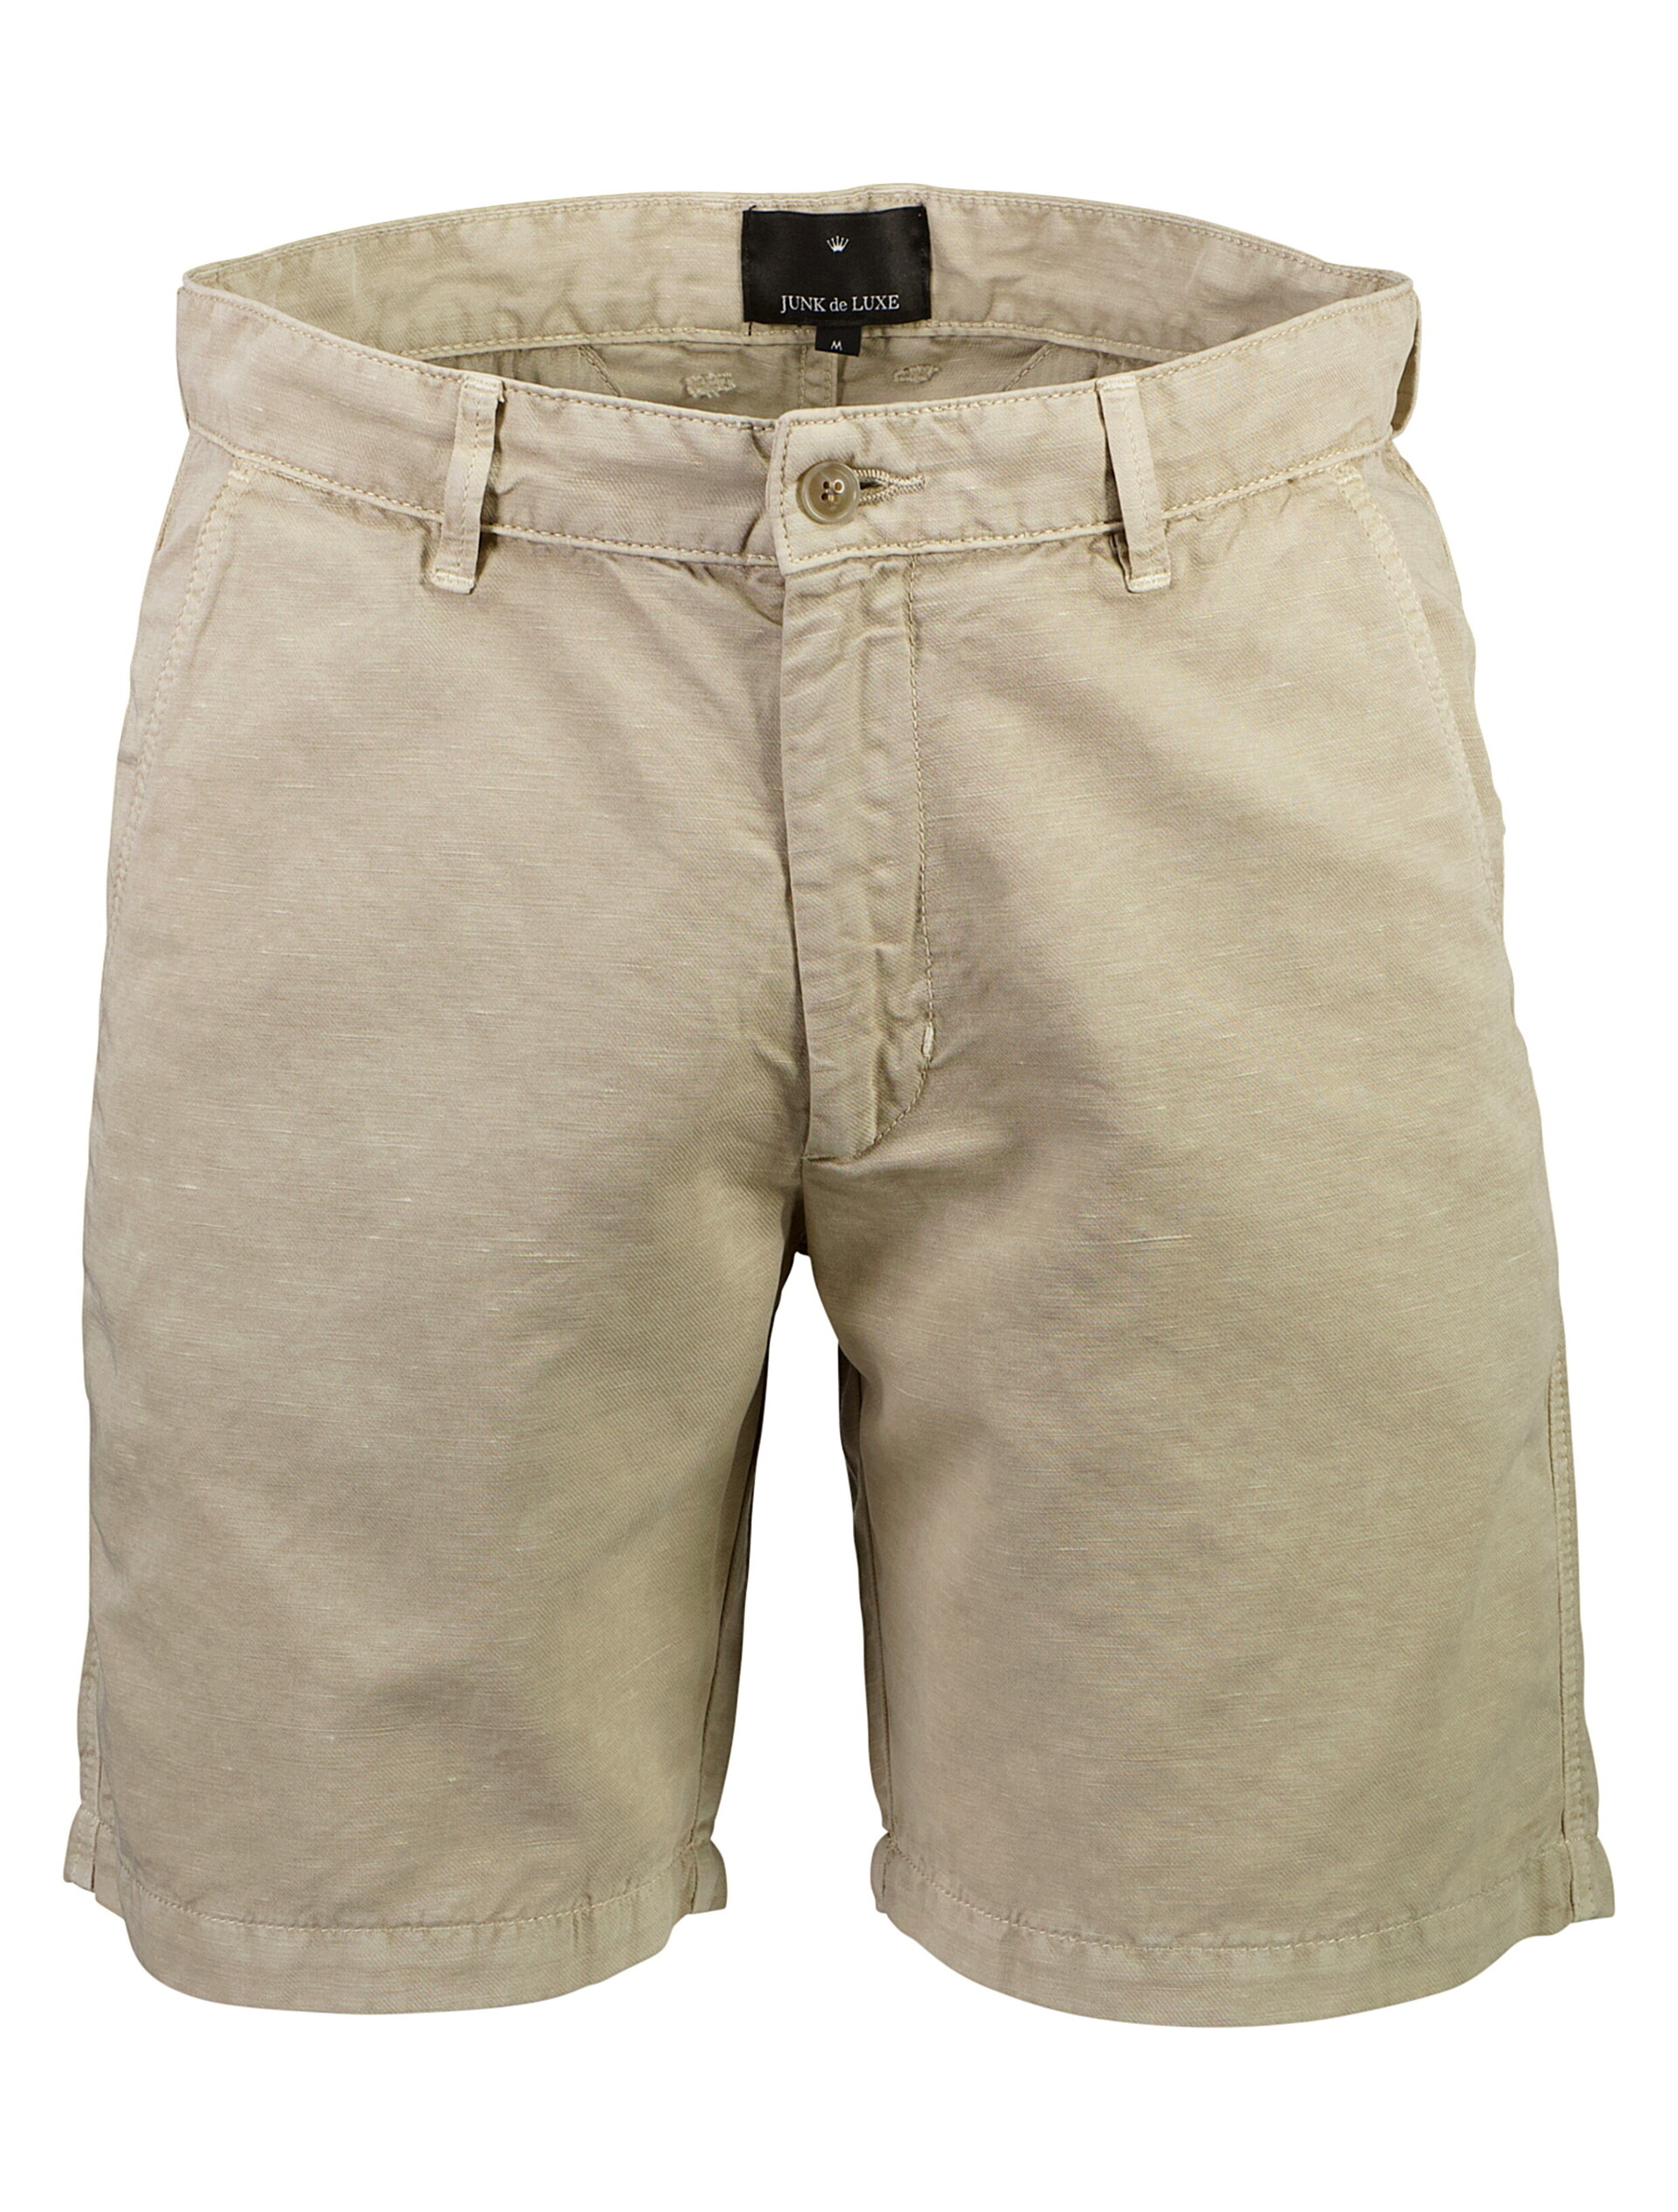 Junk de Luxe Linen shorts sand / sand